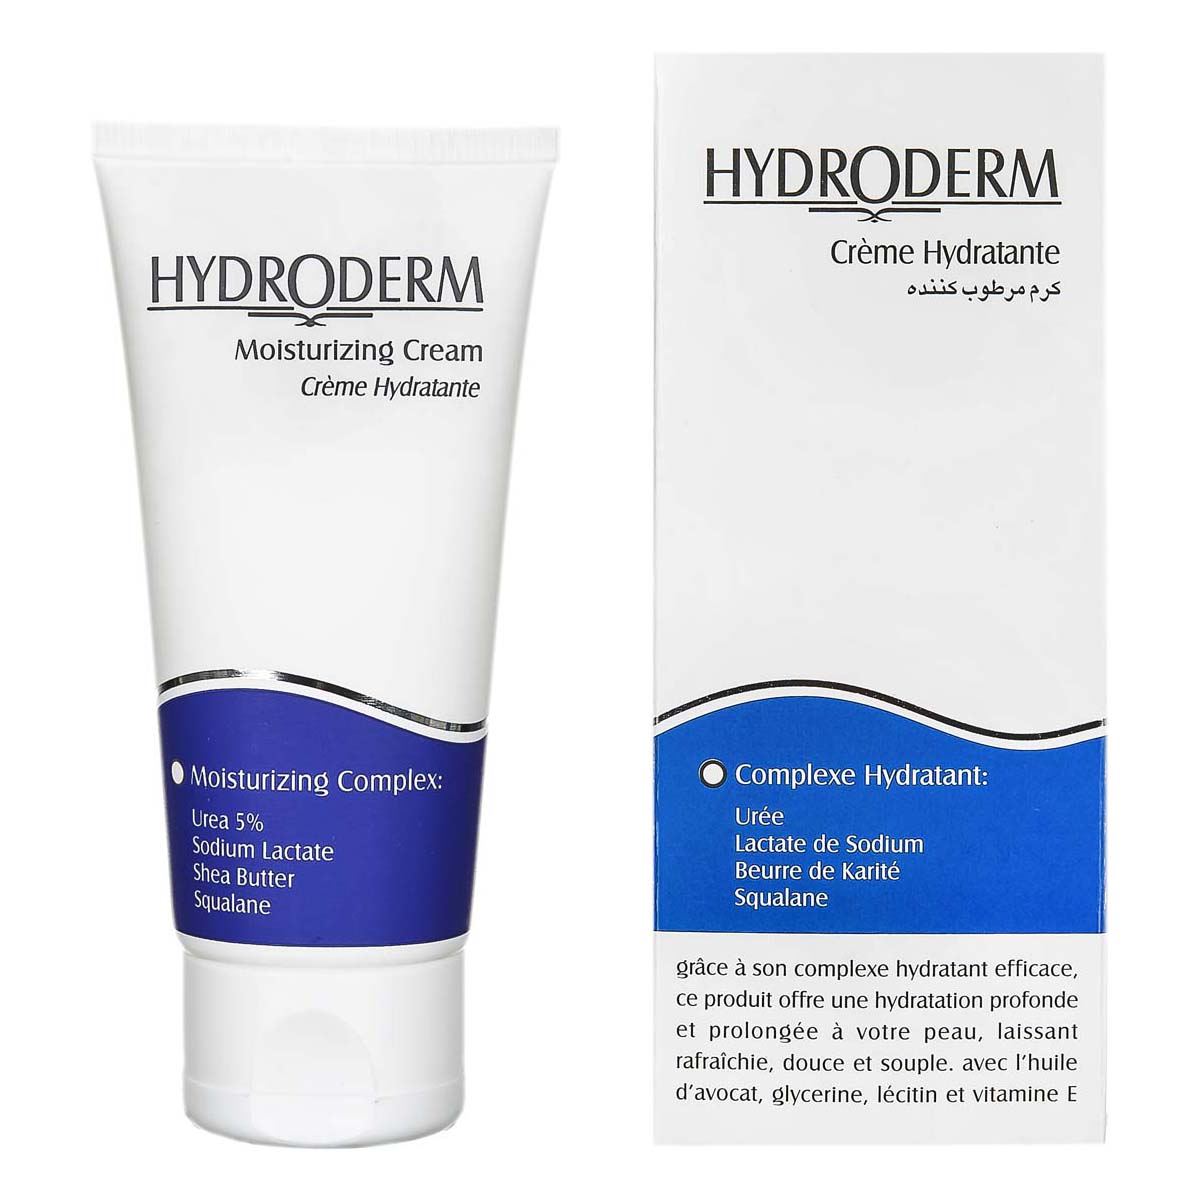 هیدرودرم کرم مرطوب کننده انواع پوست 50 گرم